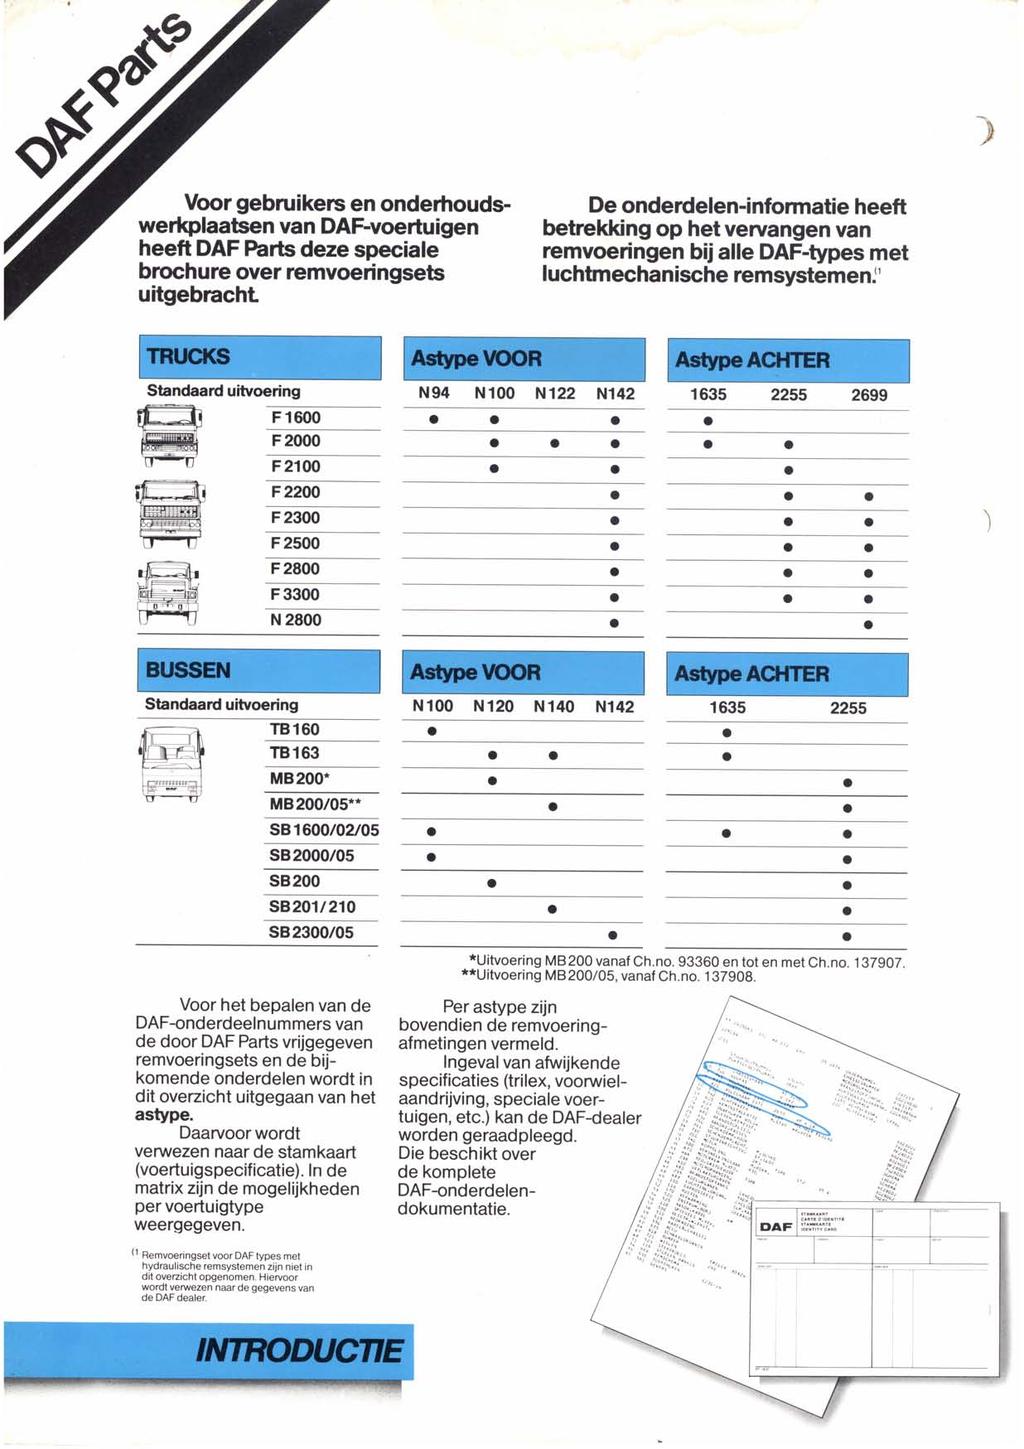 ) Voor gebruikers en onderhoudswerlglaatsen van DAF-voeÉuigen heeft DAF Parts deze speciale brochure over remvoeringsets uitgebracht De onderdelen-informatie heeft betrekking op hetvervangen van